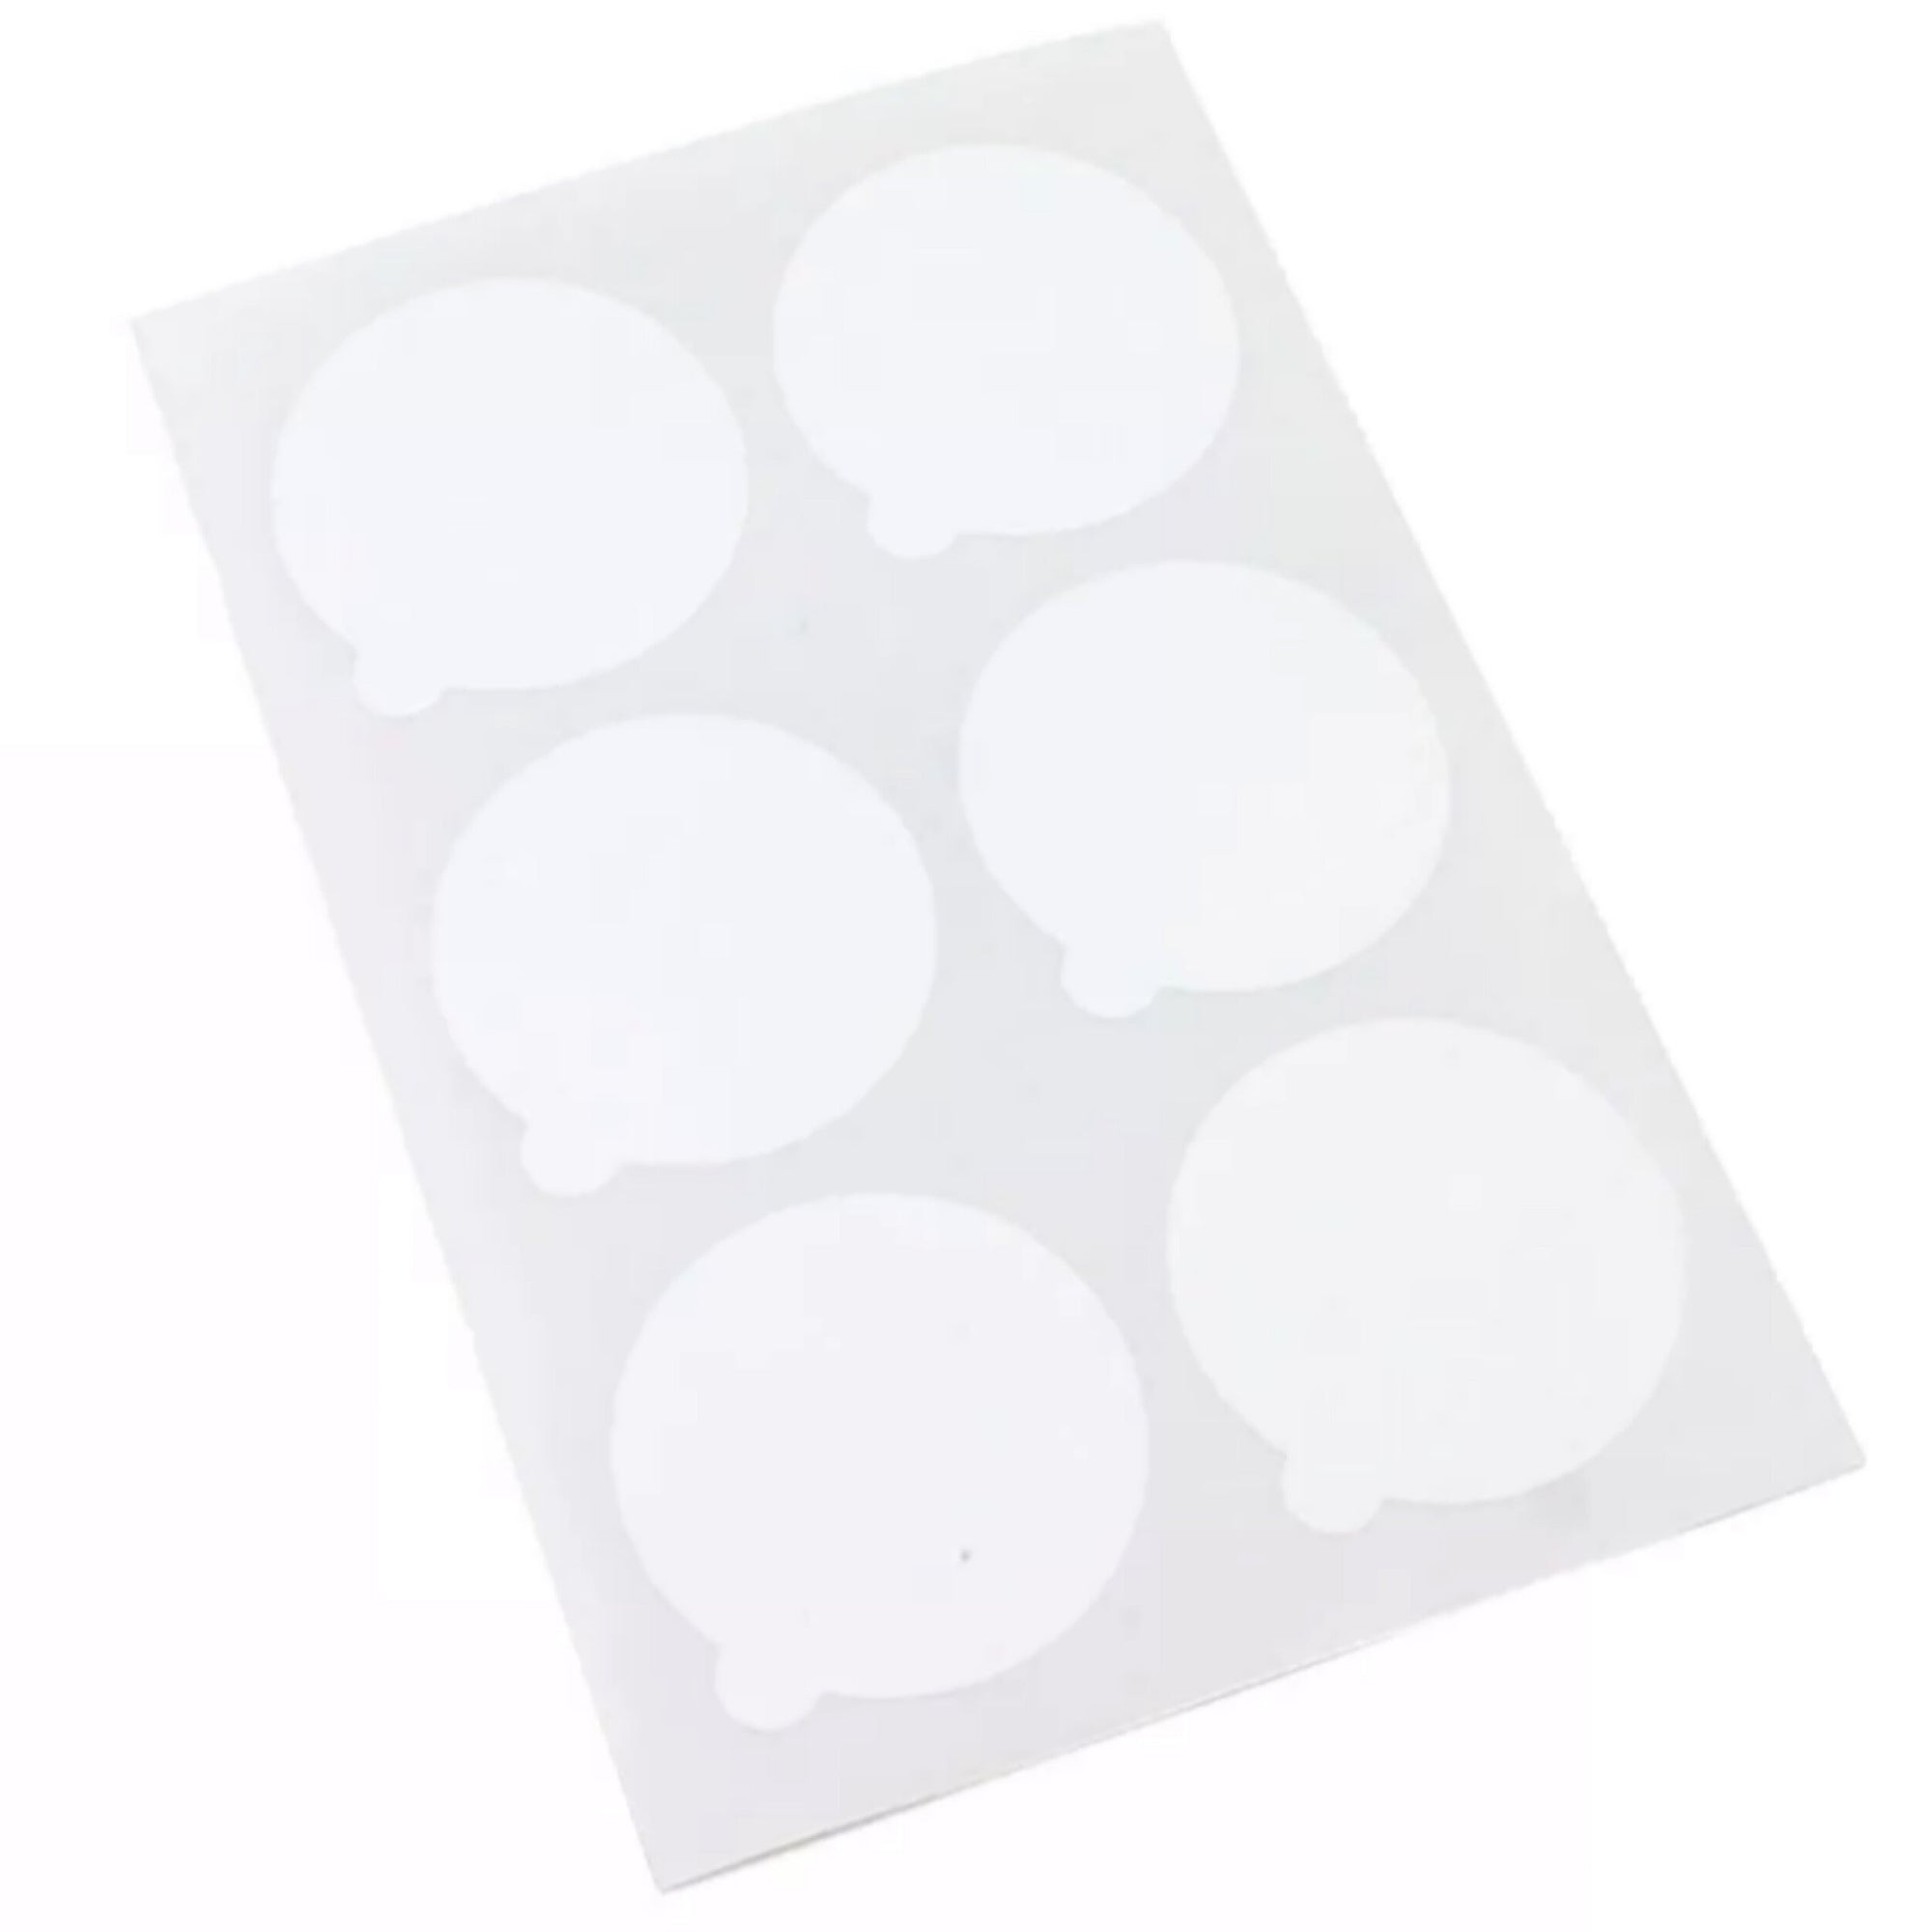 Adhesive Dots (20)